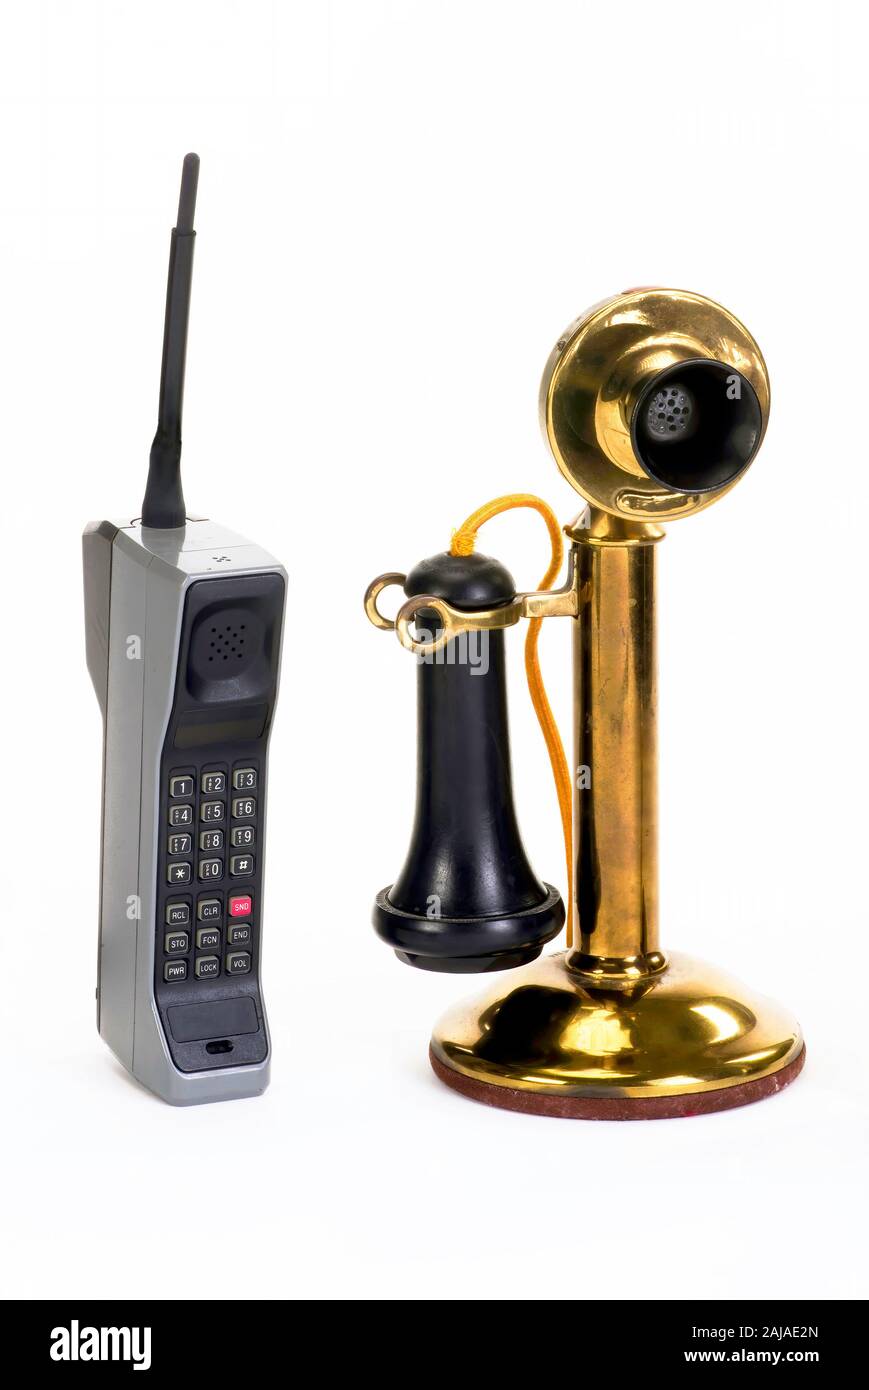 Première Brique cellulaire faite vers 1980, début de candle stick phone fait autour de 1910 . Banque D'Images